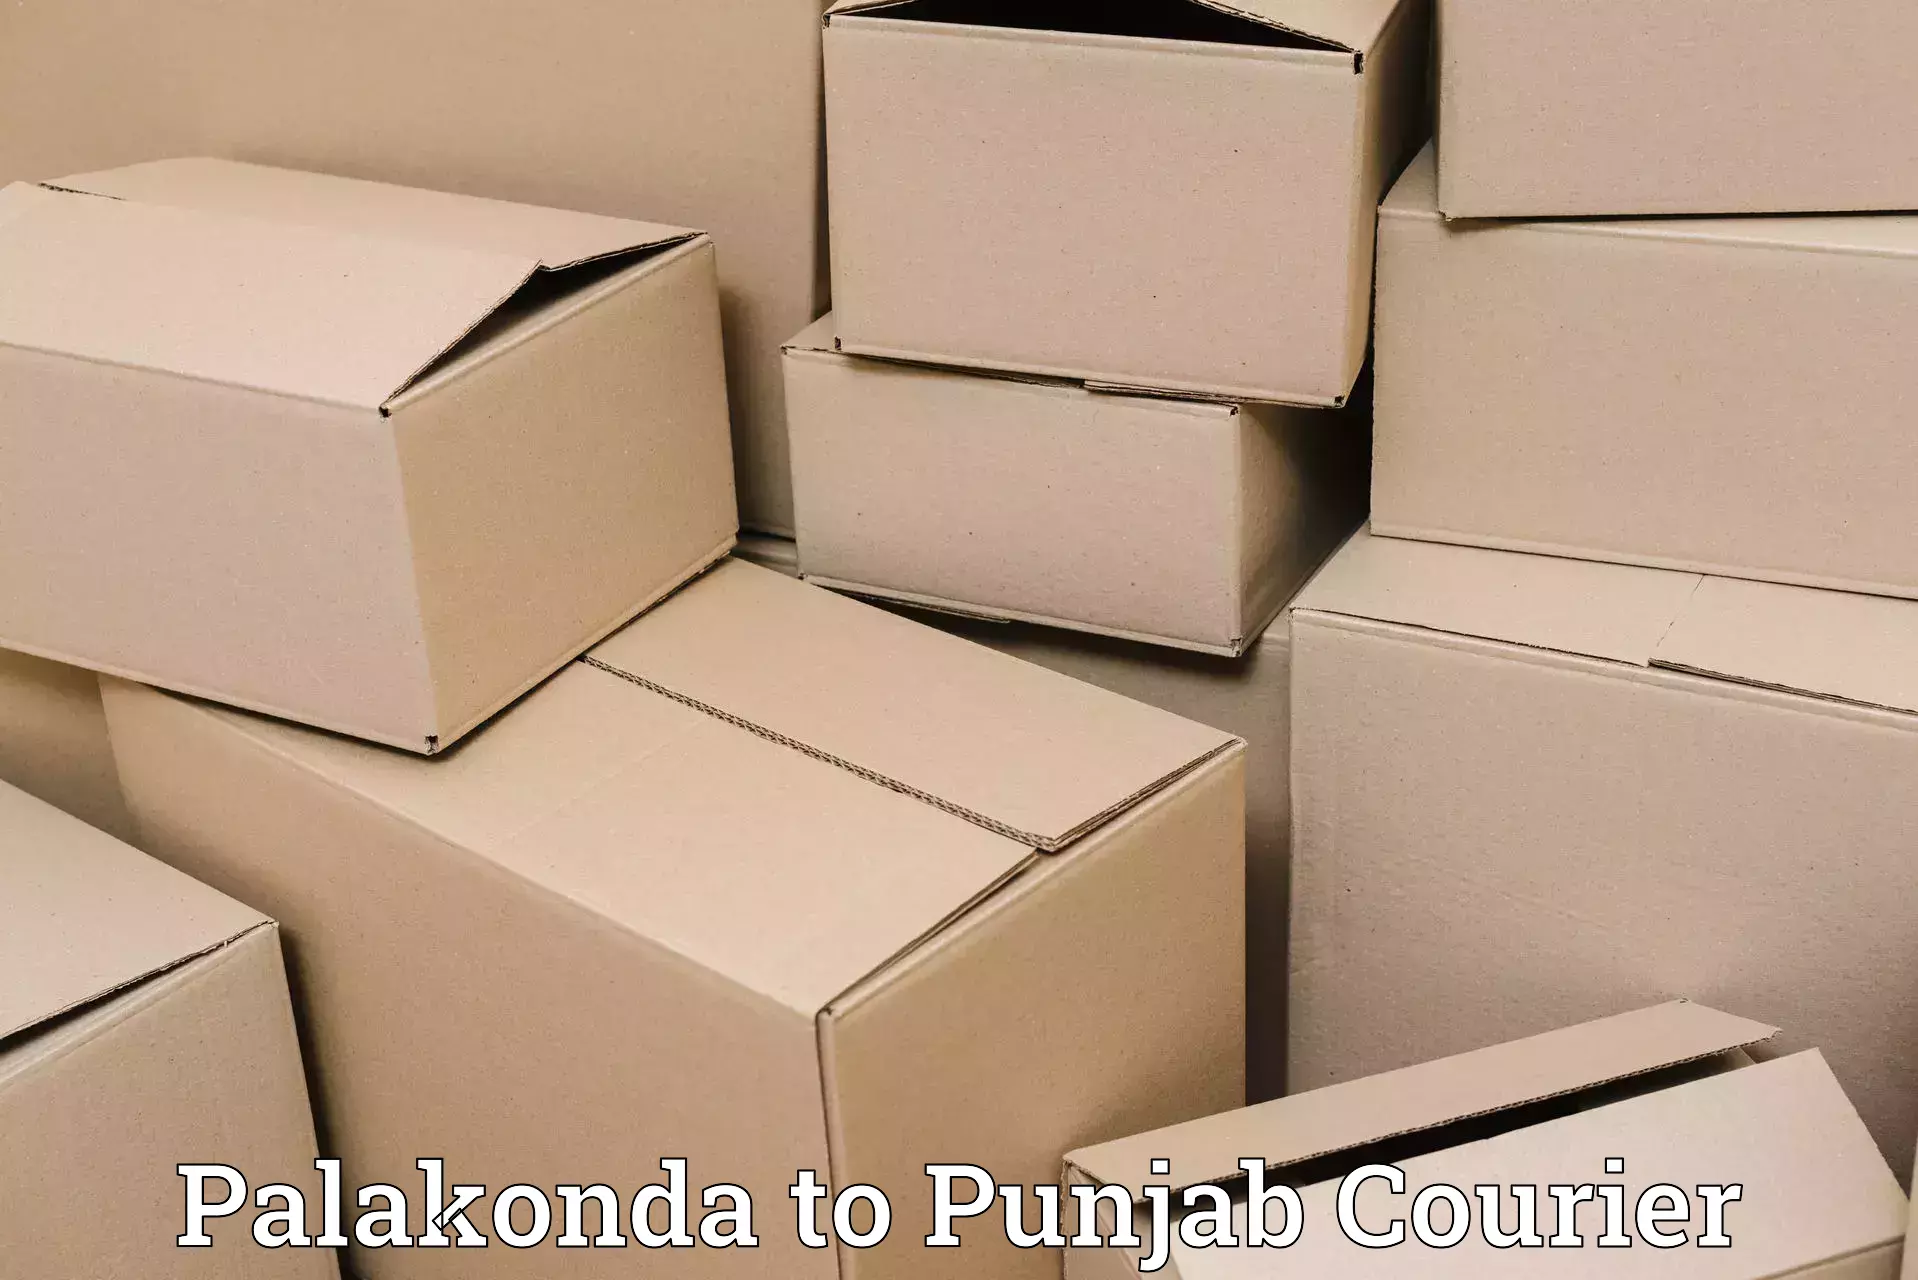 Cargo courier service Palakonda to Bathinda